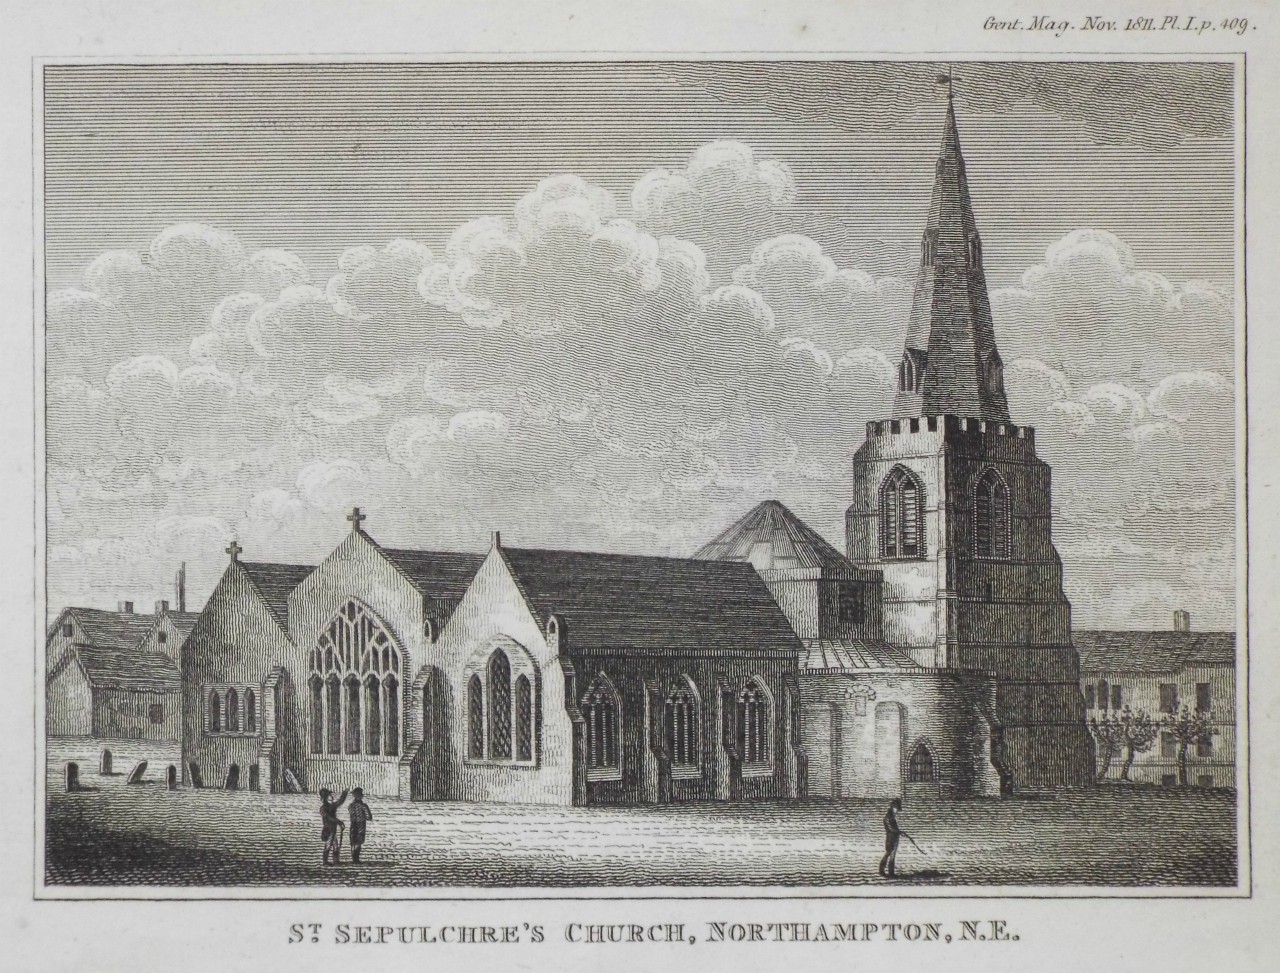 Print - St. Sepulchre's Church, Northampton N.E.